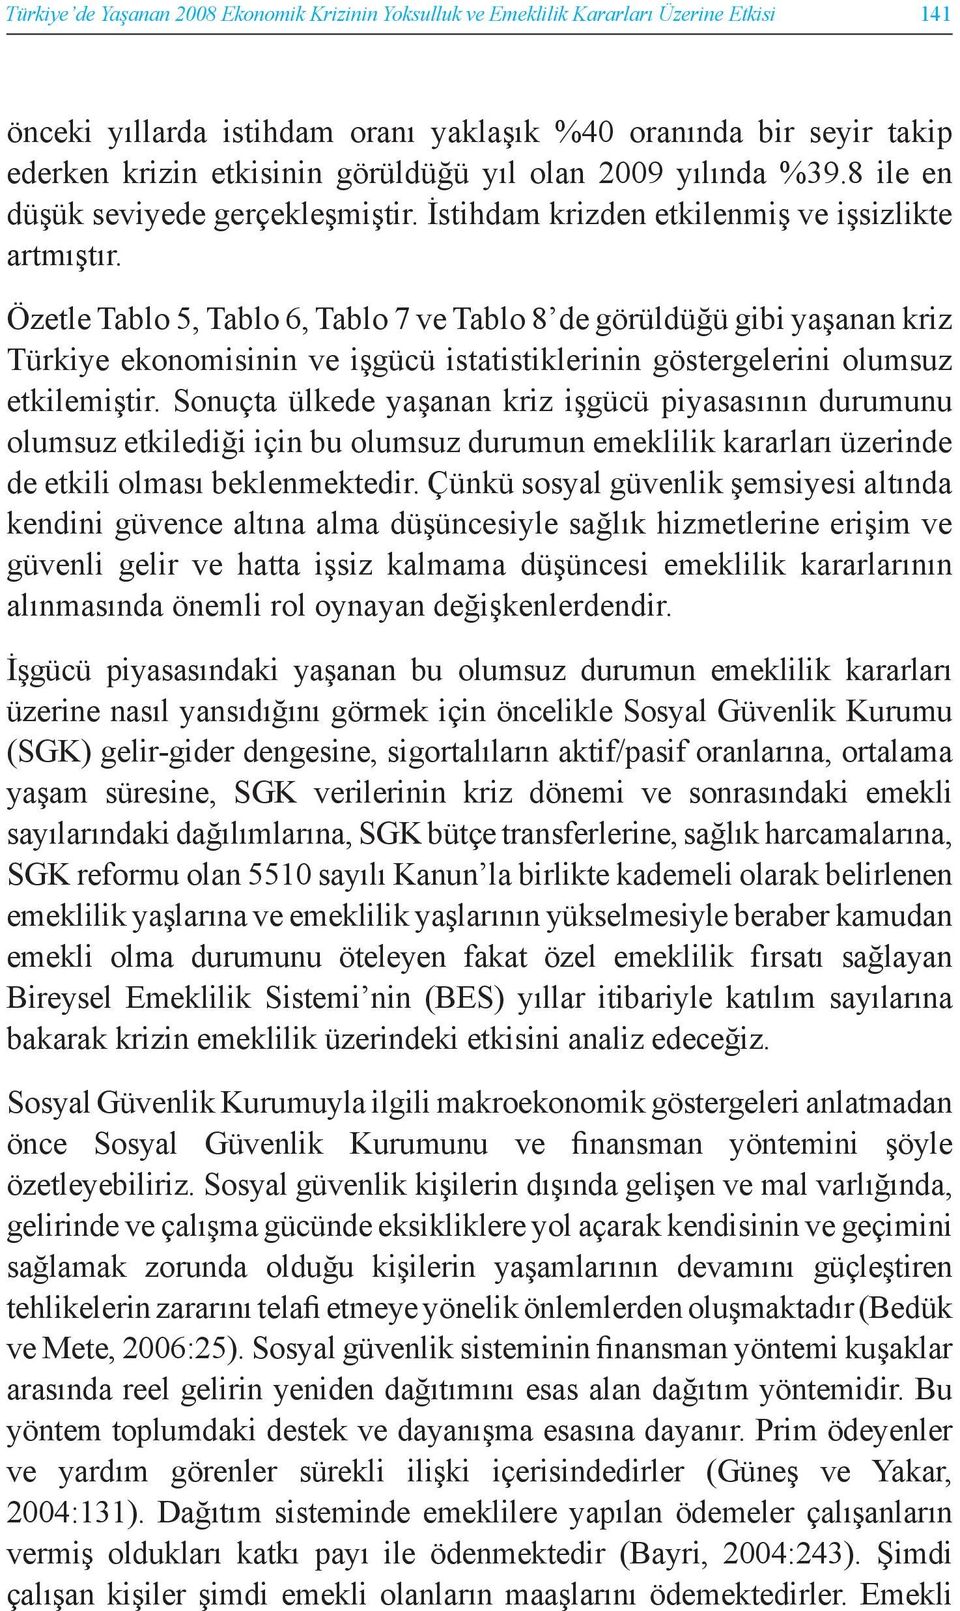 Özetle Tablo 5, Tablo 6, Tablo 7 ve Tablo 8 de görüldüğü gibi yaşanan kriz Türkiye ekonomisinin ve işgücü istatistiklerinin göstergelerini olumsuz etkilemiştir.